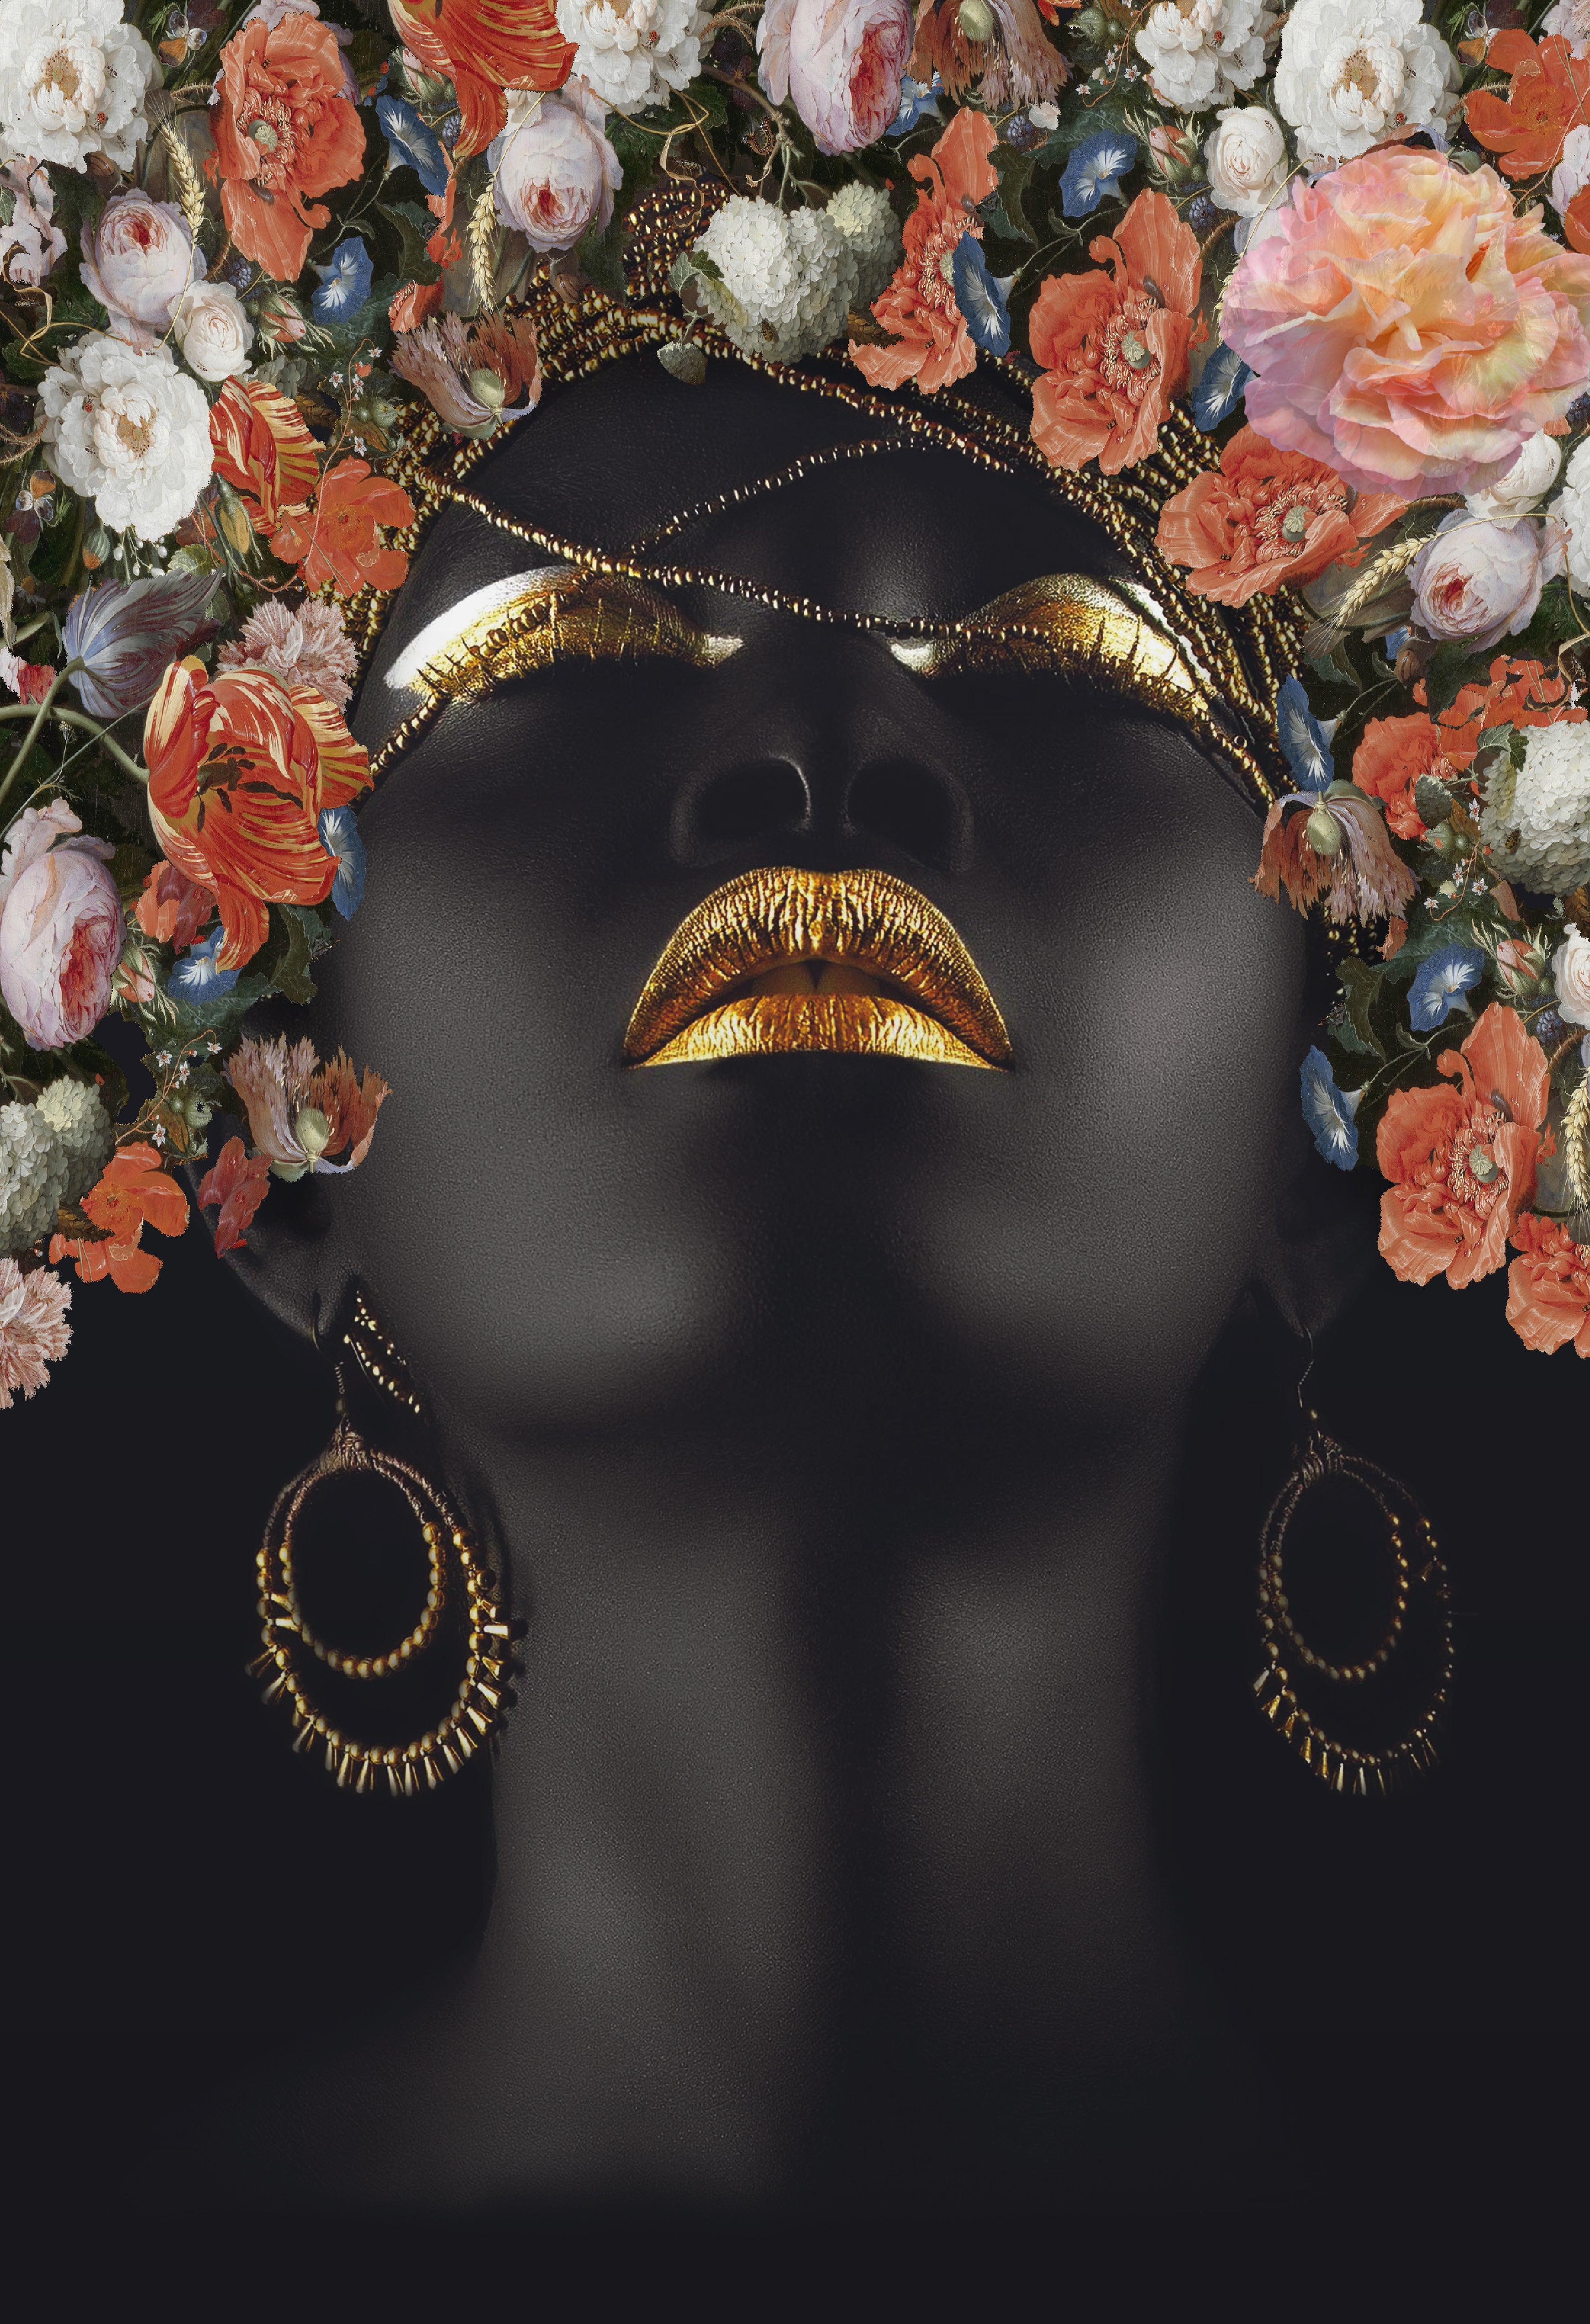 PLEXIGLASS - AFRICA FLOWER WOMAN ART